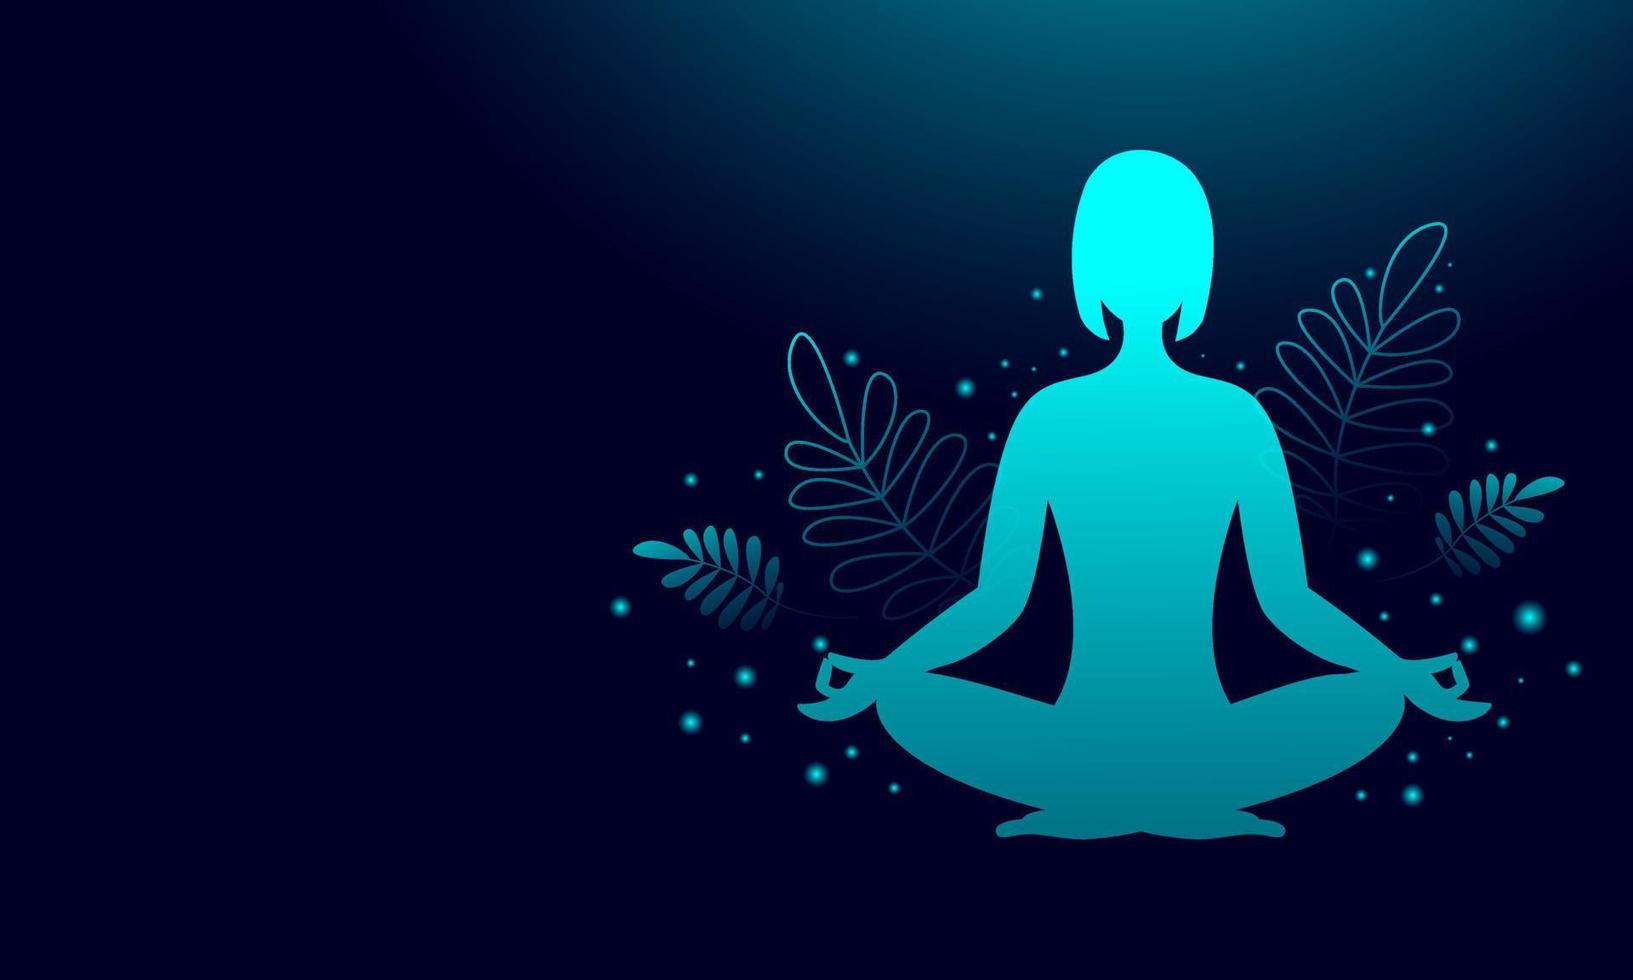 silueta de una mujer en posición de loto sobre un fondo oscuro, gradiente de neón, clase de yoga, meditación. diseño de banner con espacio de copia. ilustración de stock vectorial. vector